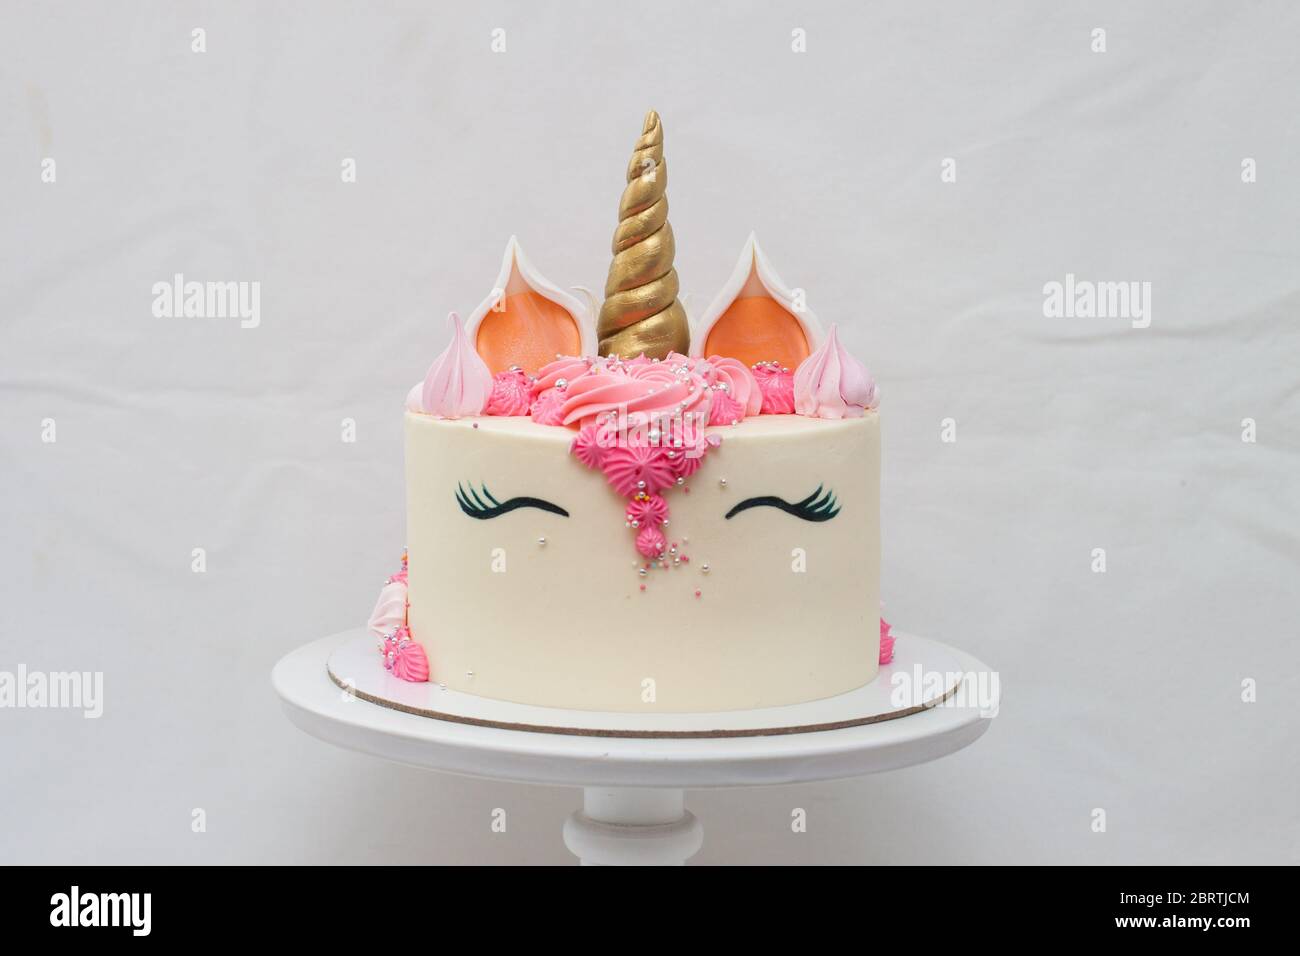 Gâteau au licorne maison décoré de crème fouettée rose. Fond gris clair Uni. Banque D'Images